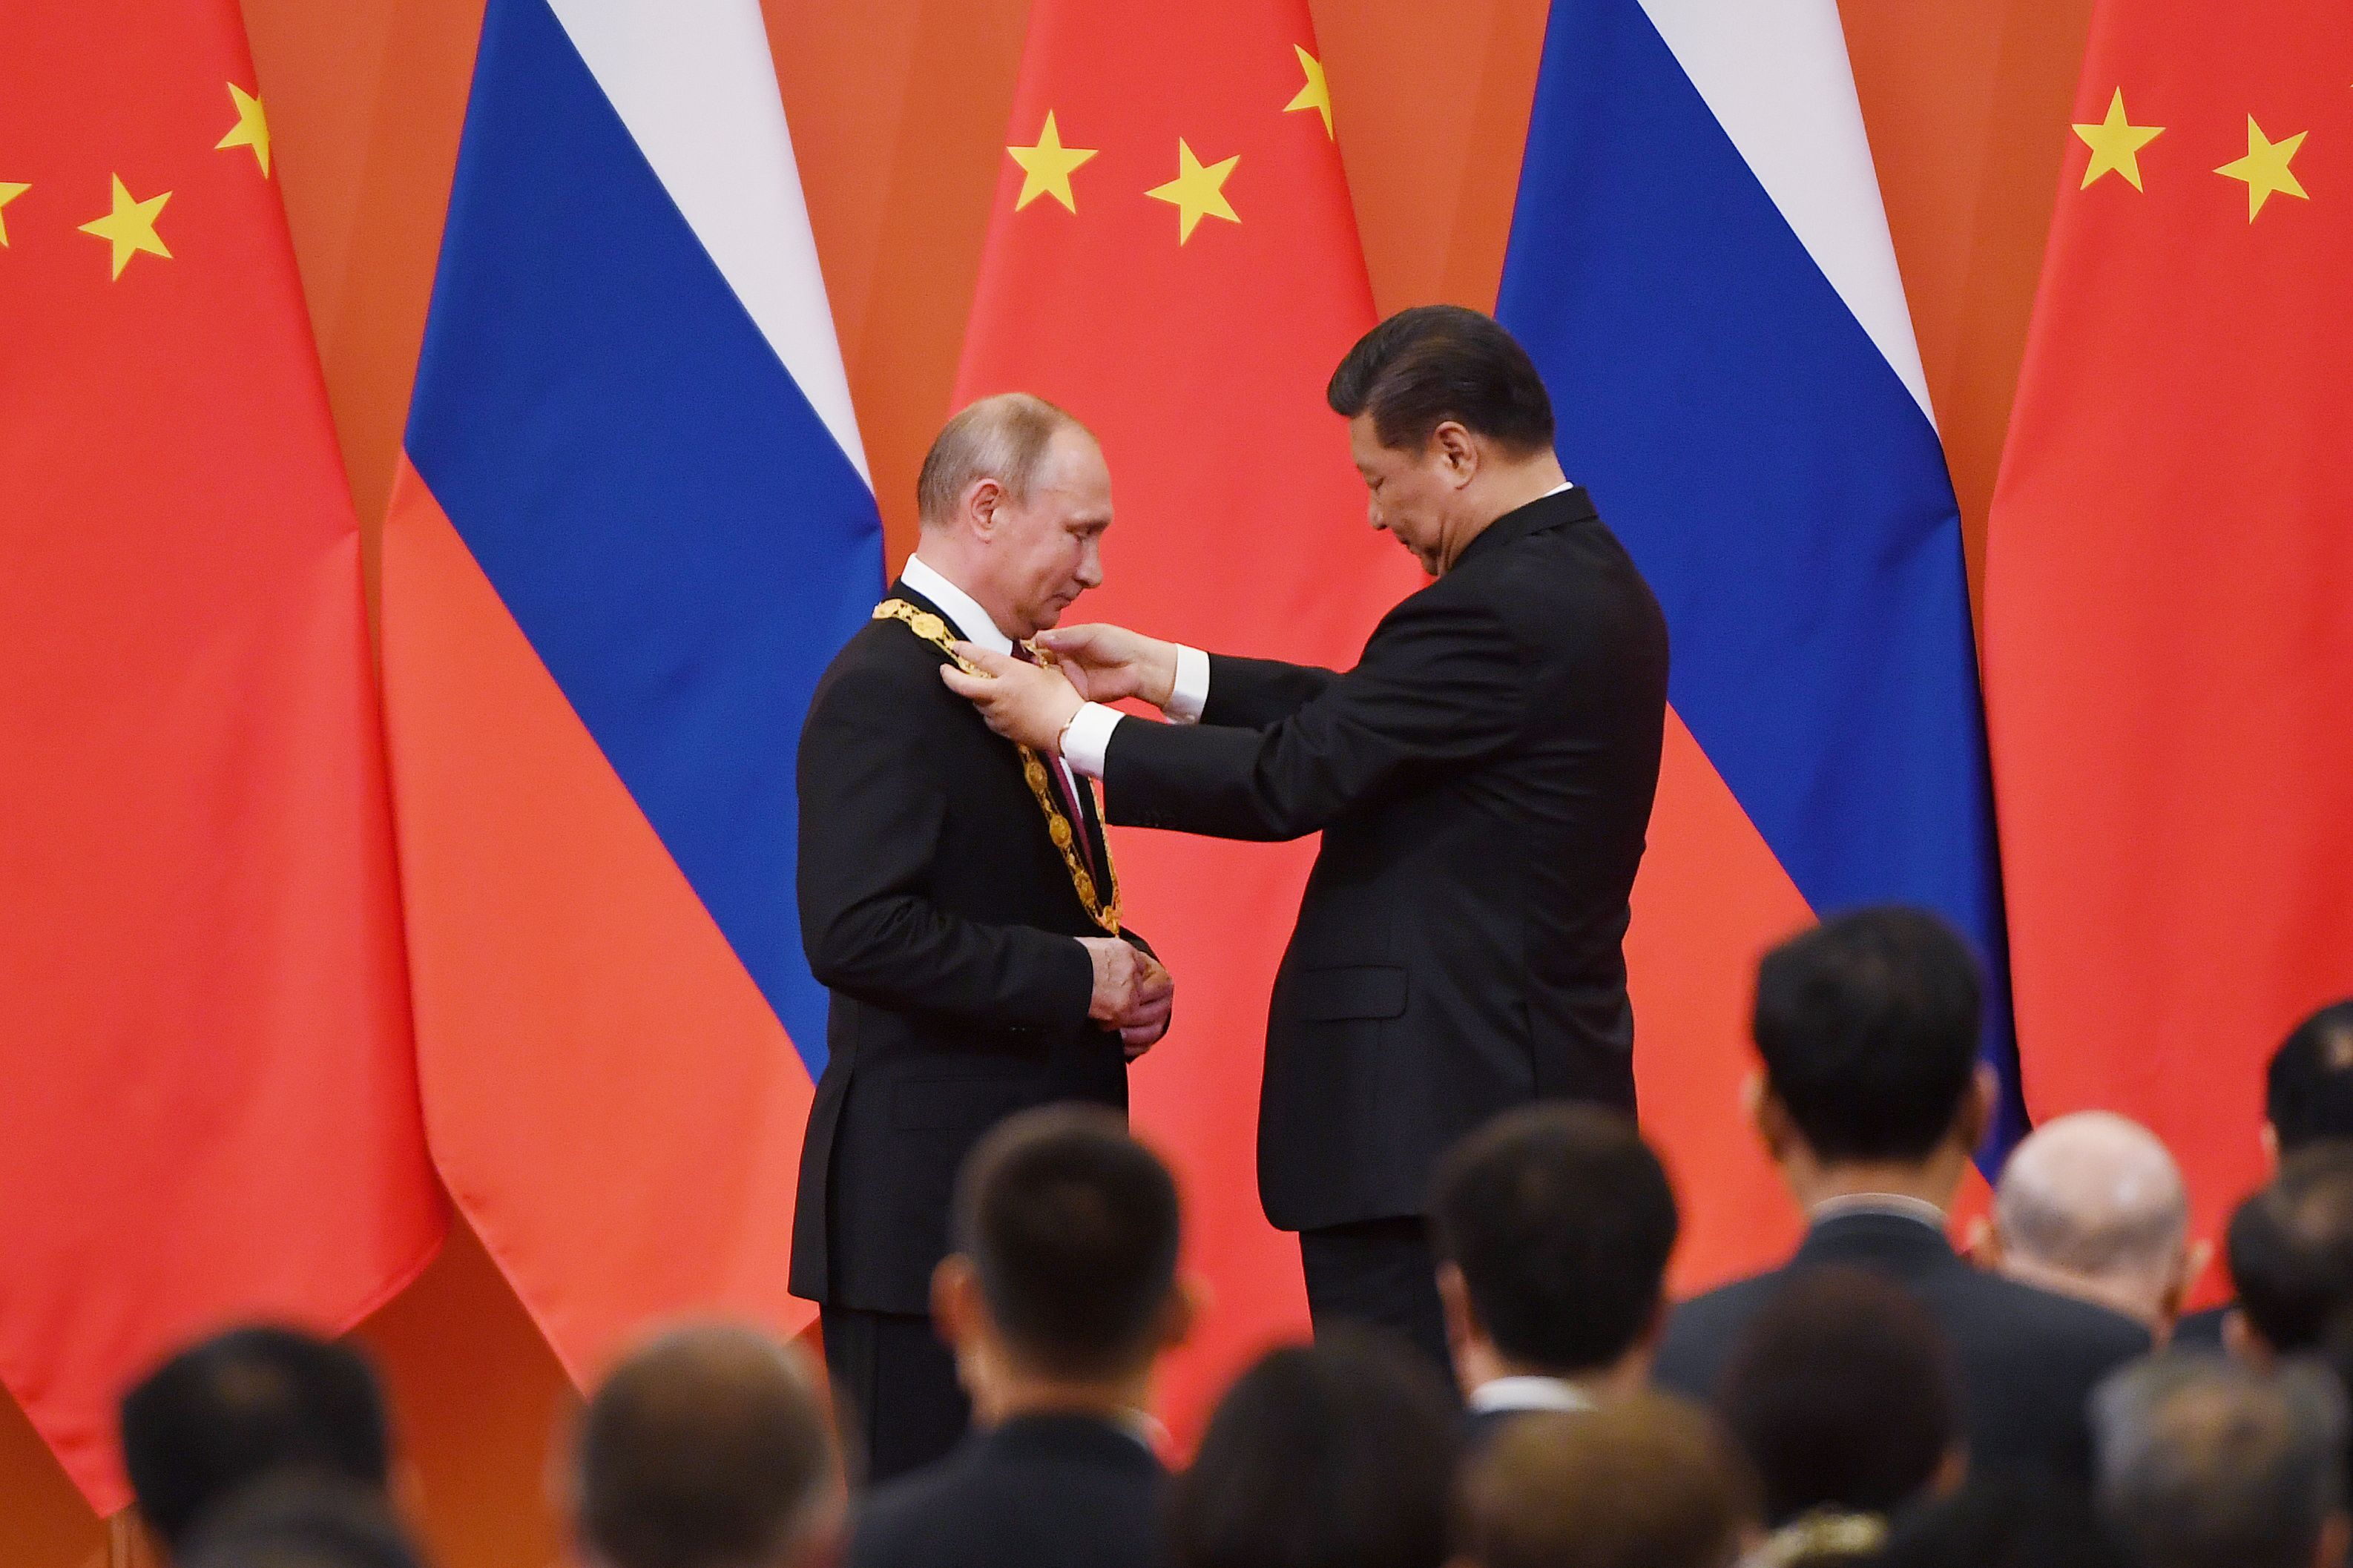 تقليد الرئيس الصينى ميدالية الصداقة لبوتين